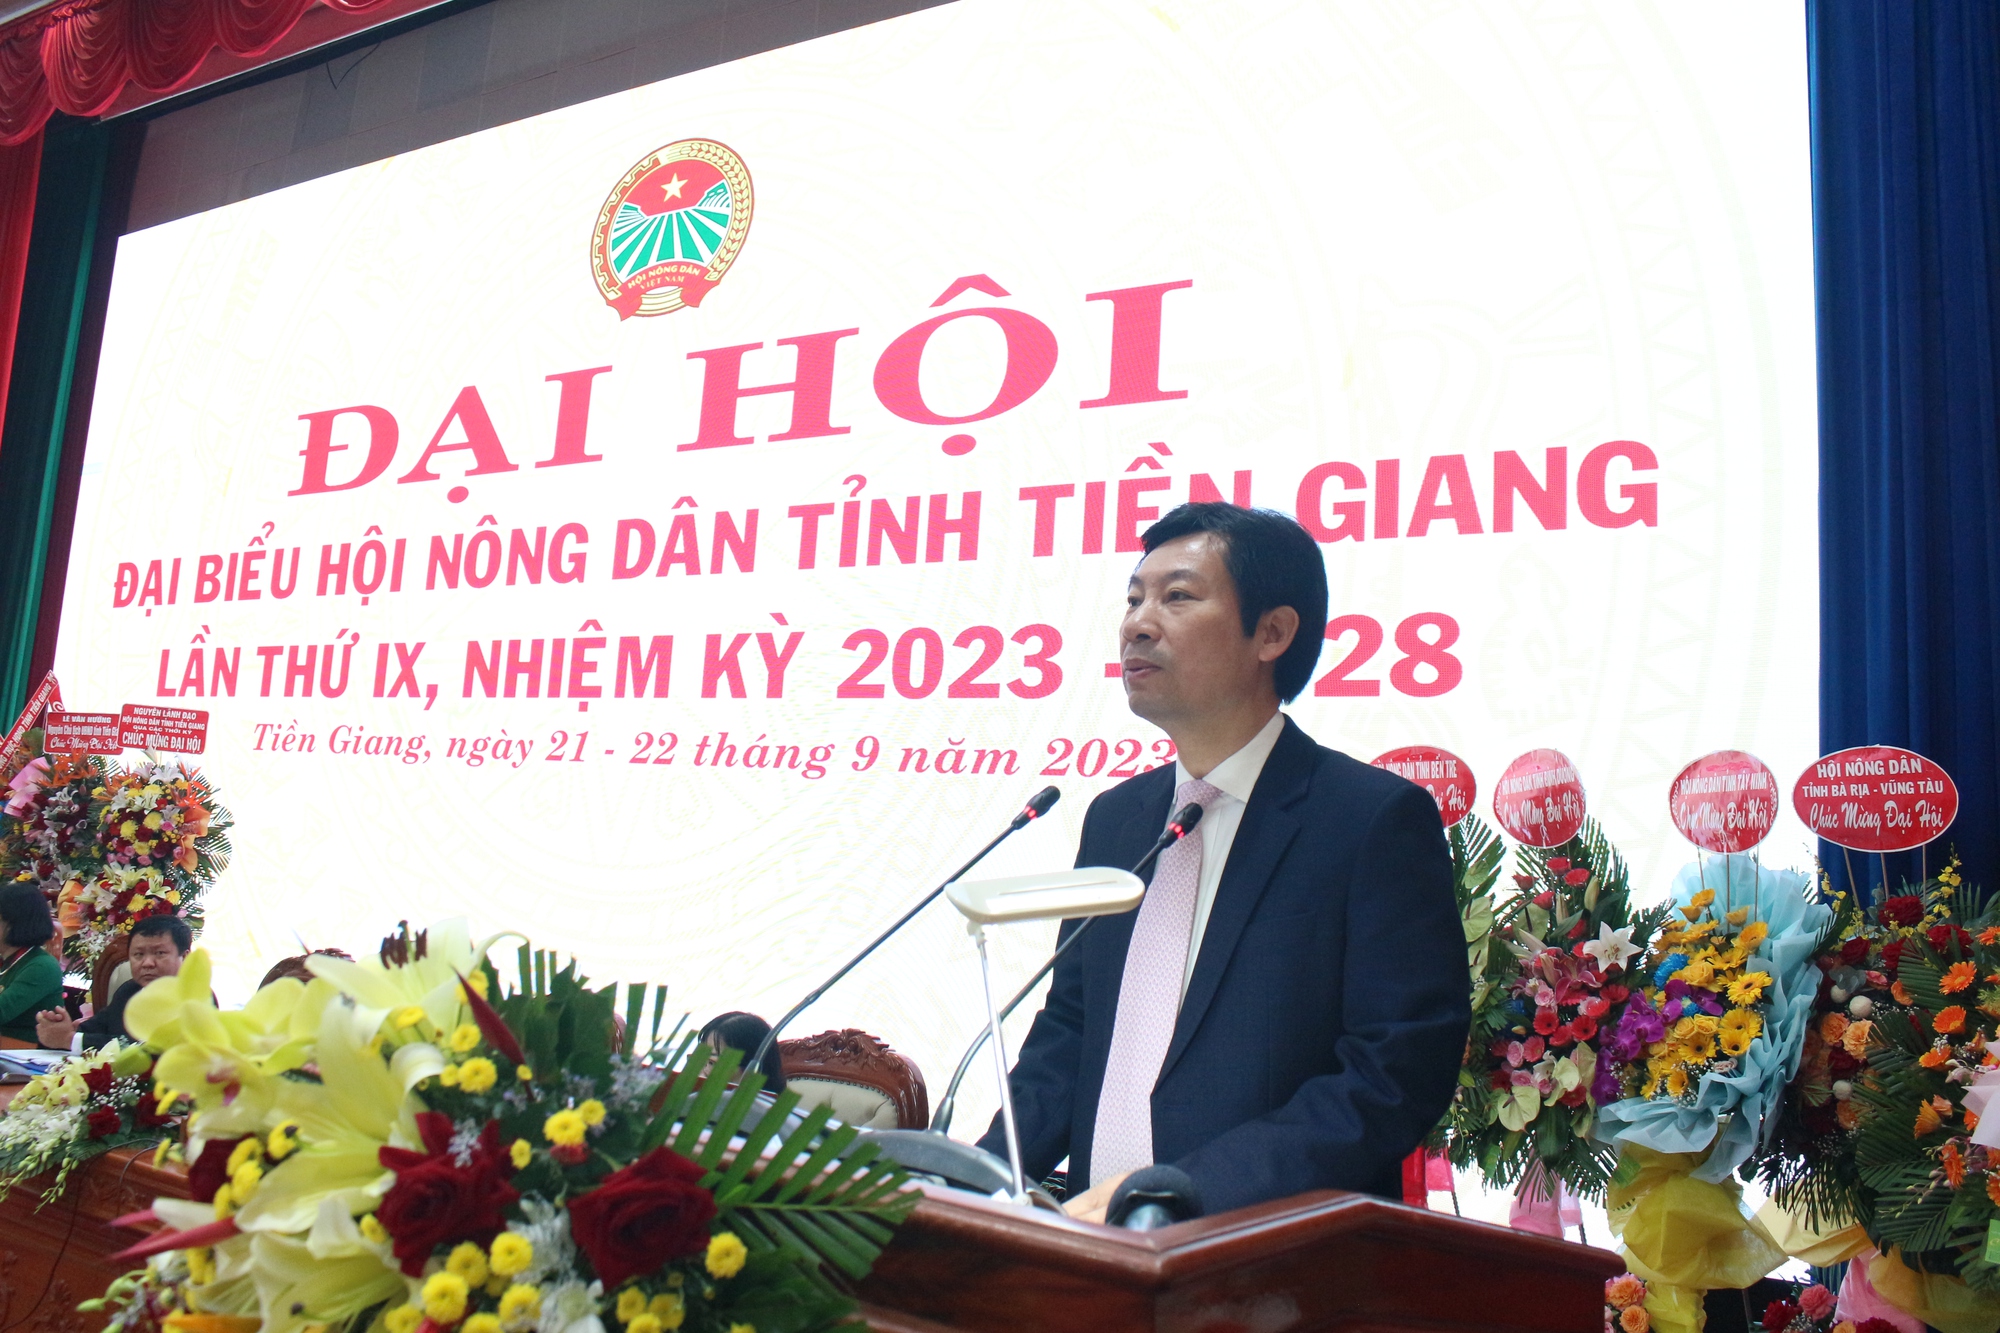 Bà Nguyễn Thị Hồng Phượng tái đắc cử chức Chủ tịch Hội Nông dân tỉnh Tiền Giang, lần thứ IX - Ảnh 1.